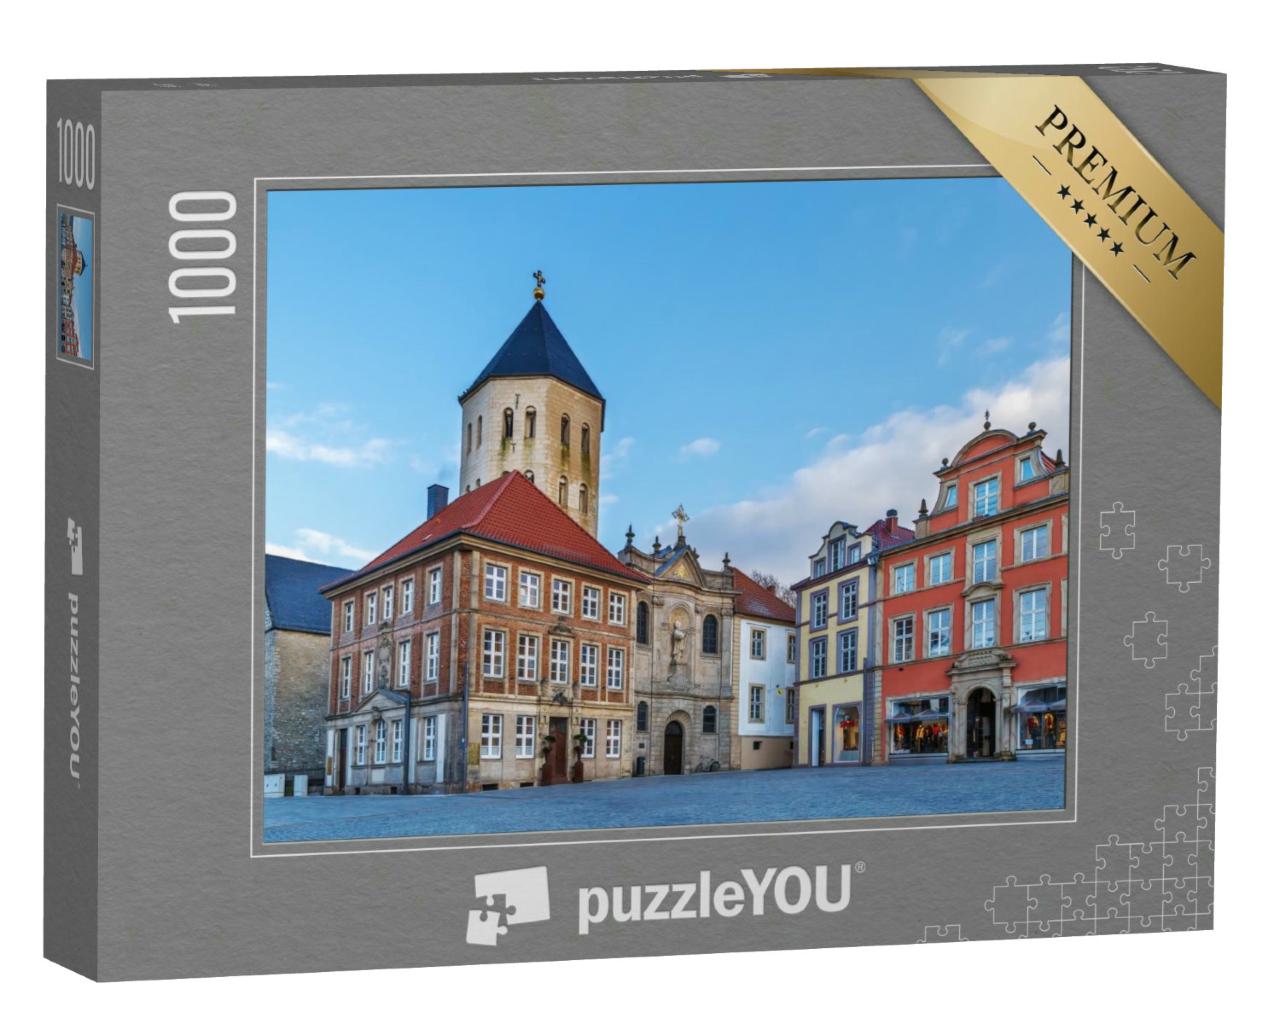 Puzzle 1000 Teile „Marktplatz Paderborn“